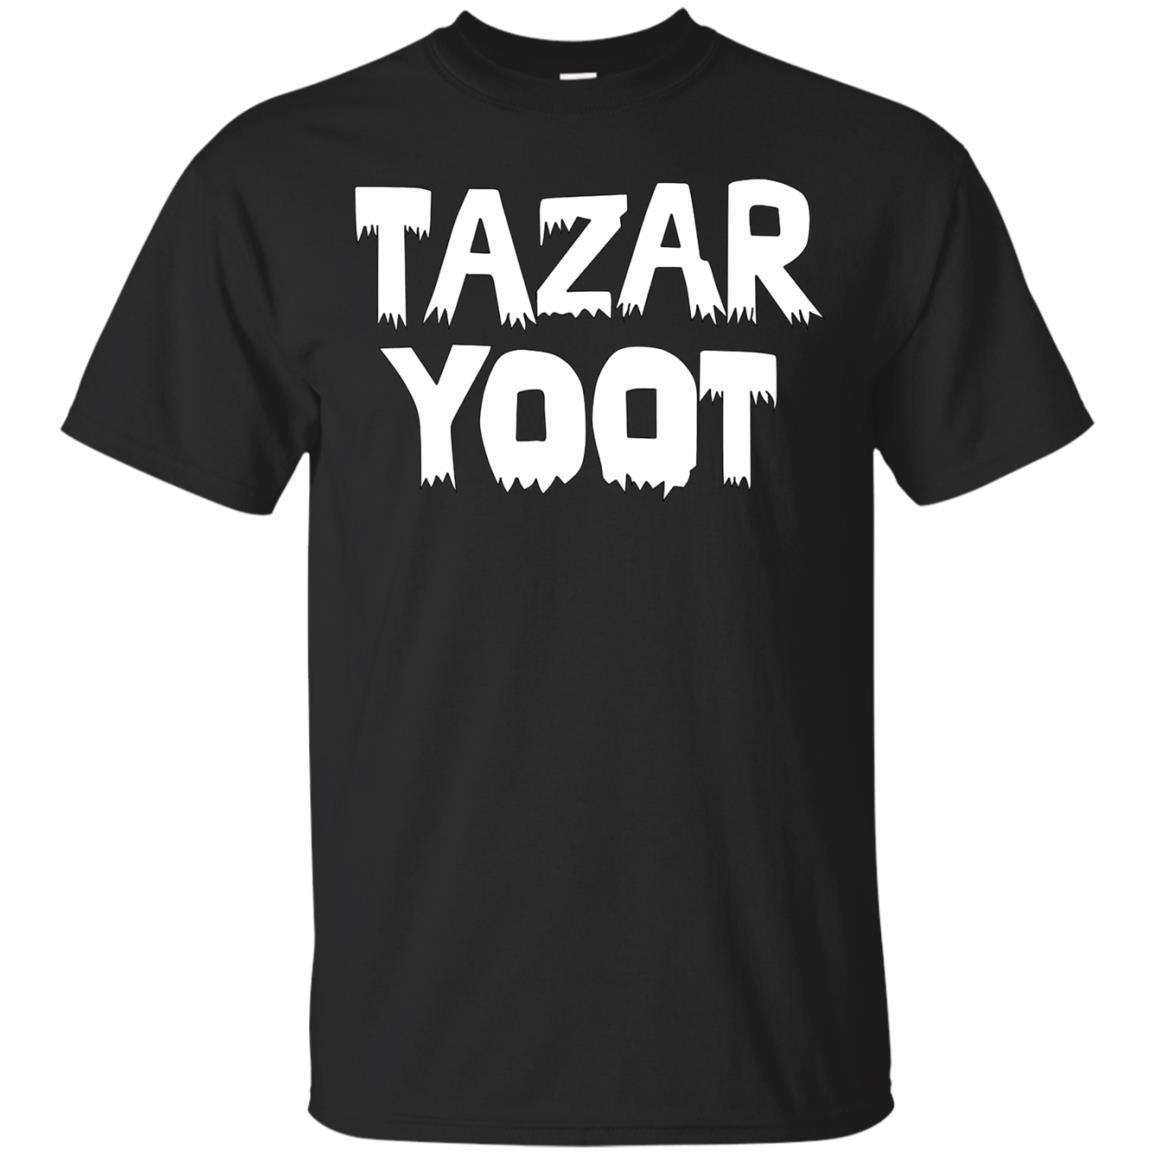 tazar yoot shirt - black